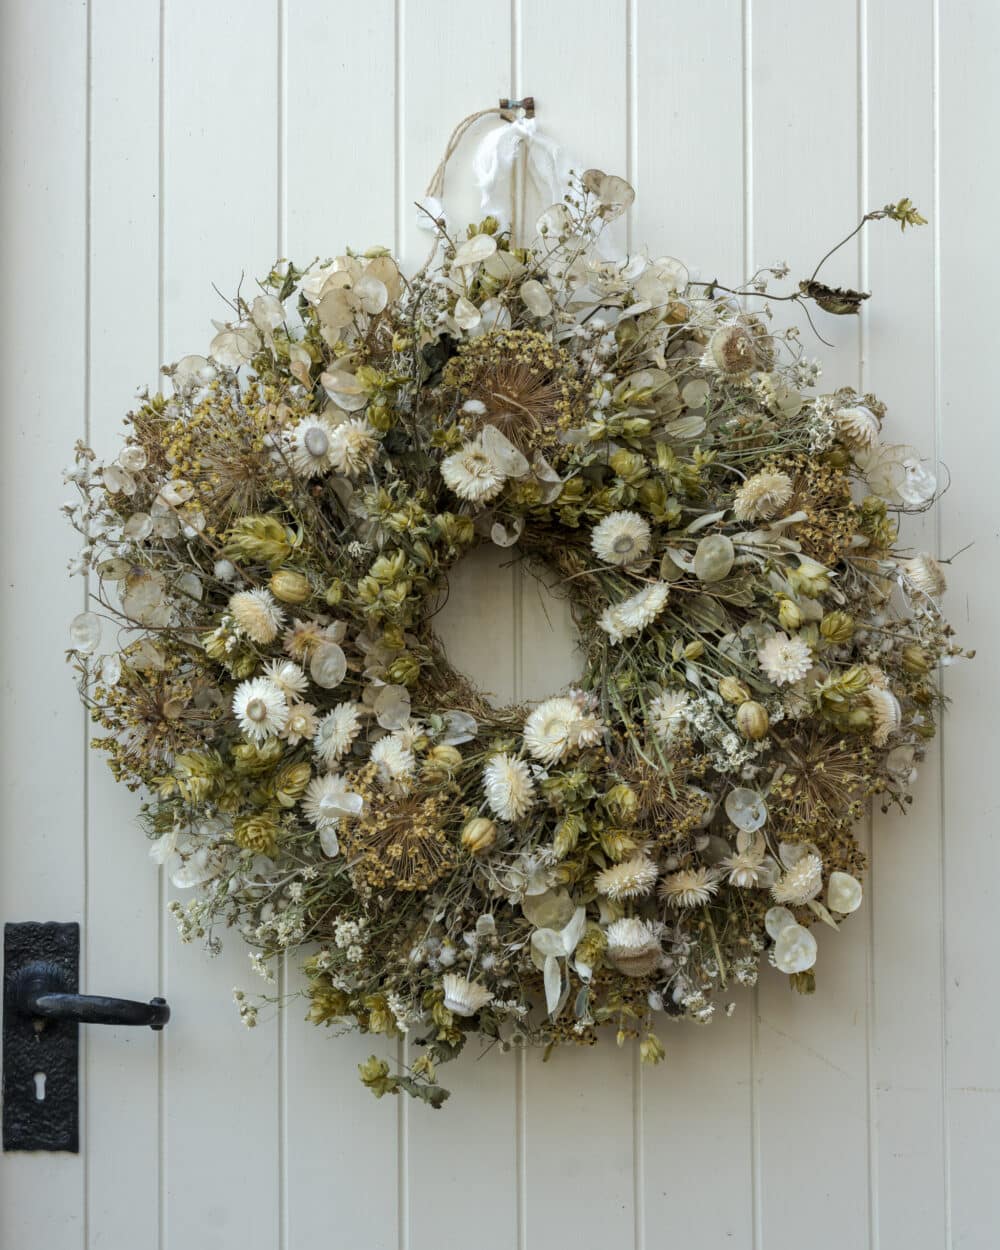 Everlasting Dried Flower Wreath in a wild garden style